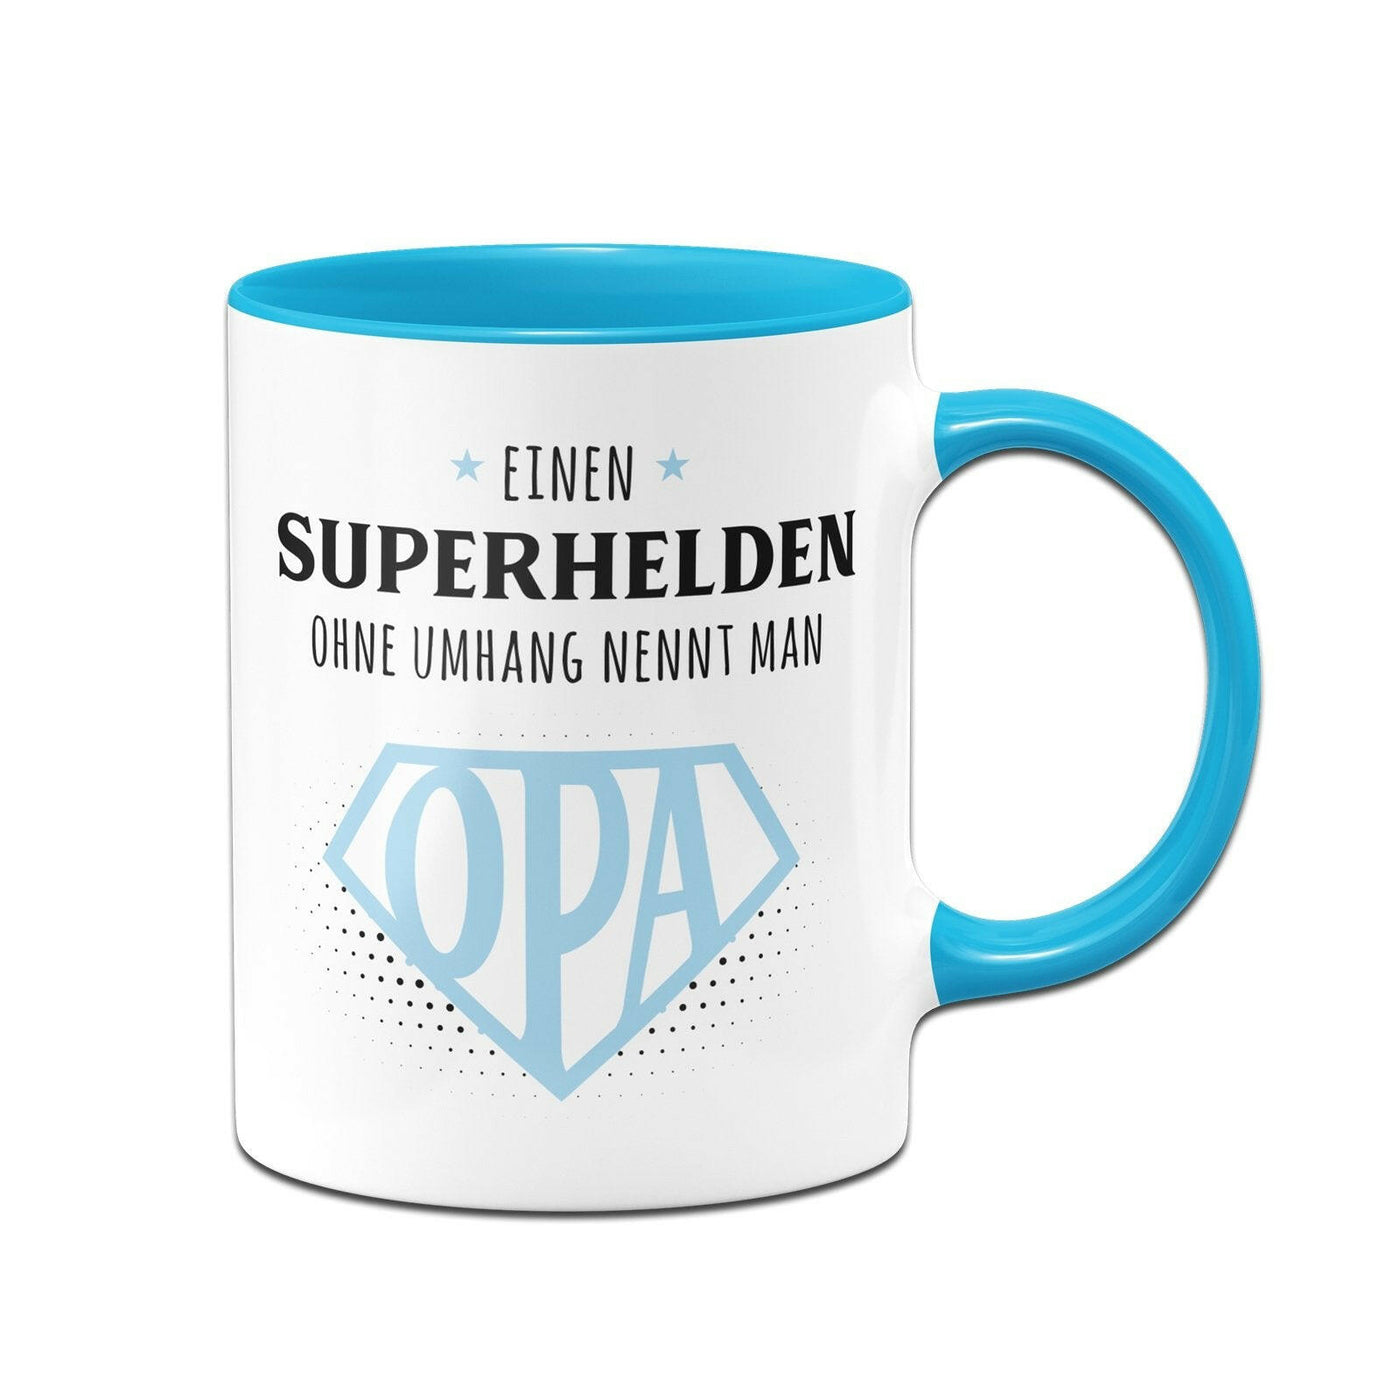 Bild: Tasse - Einen Superhelden ohne Umhang nennt man Opa Geschenkidee